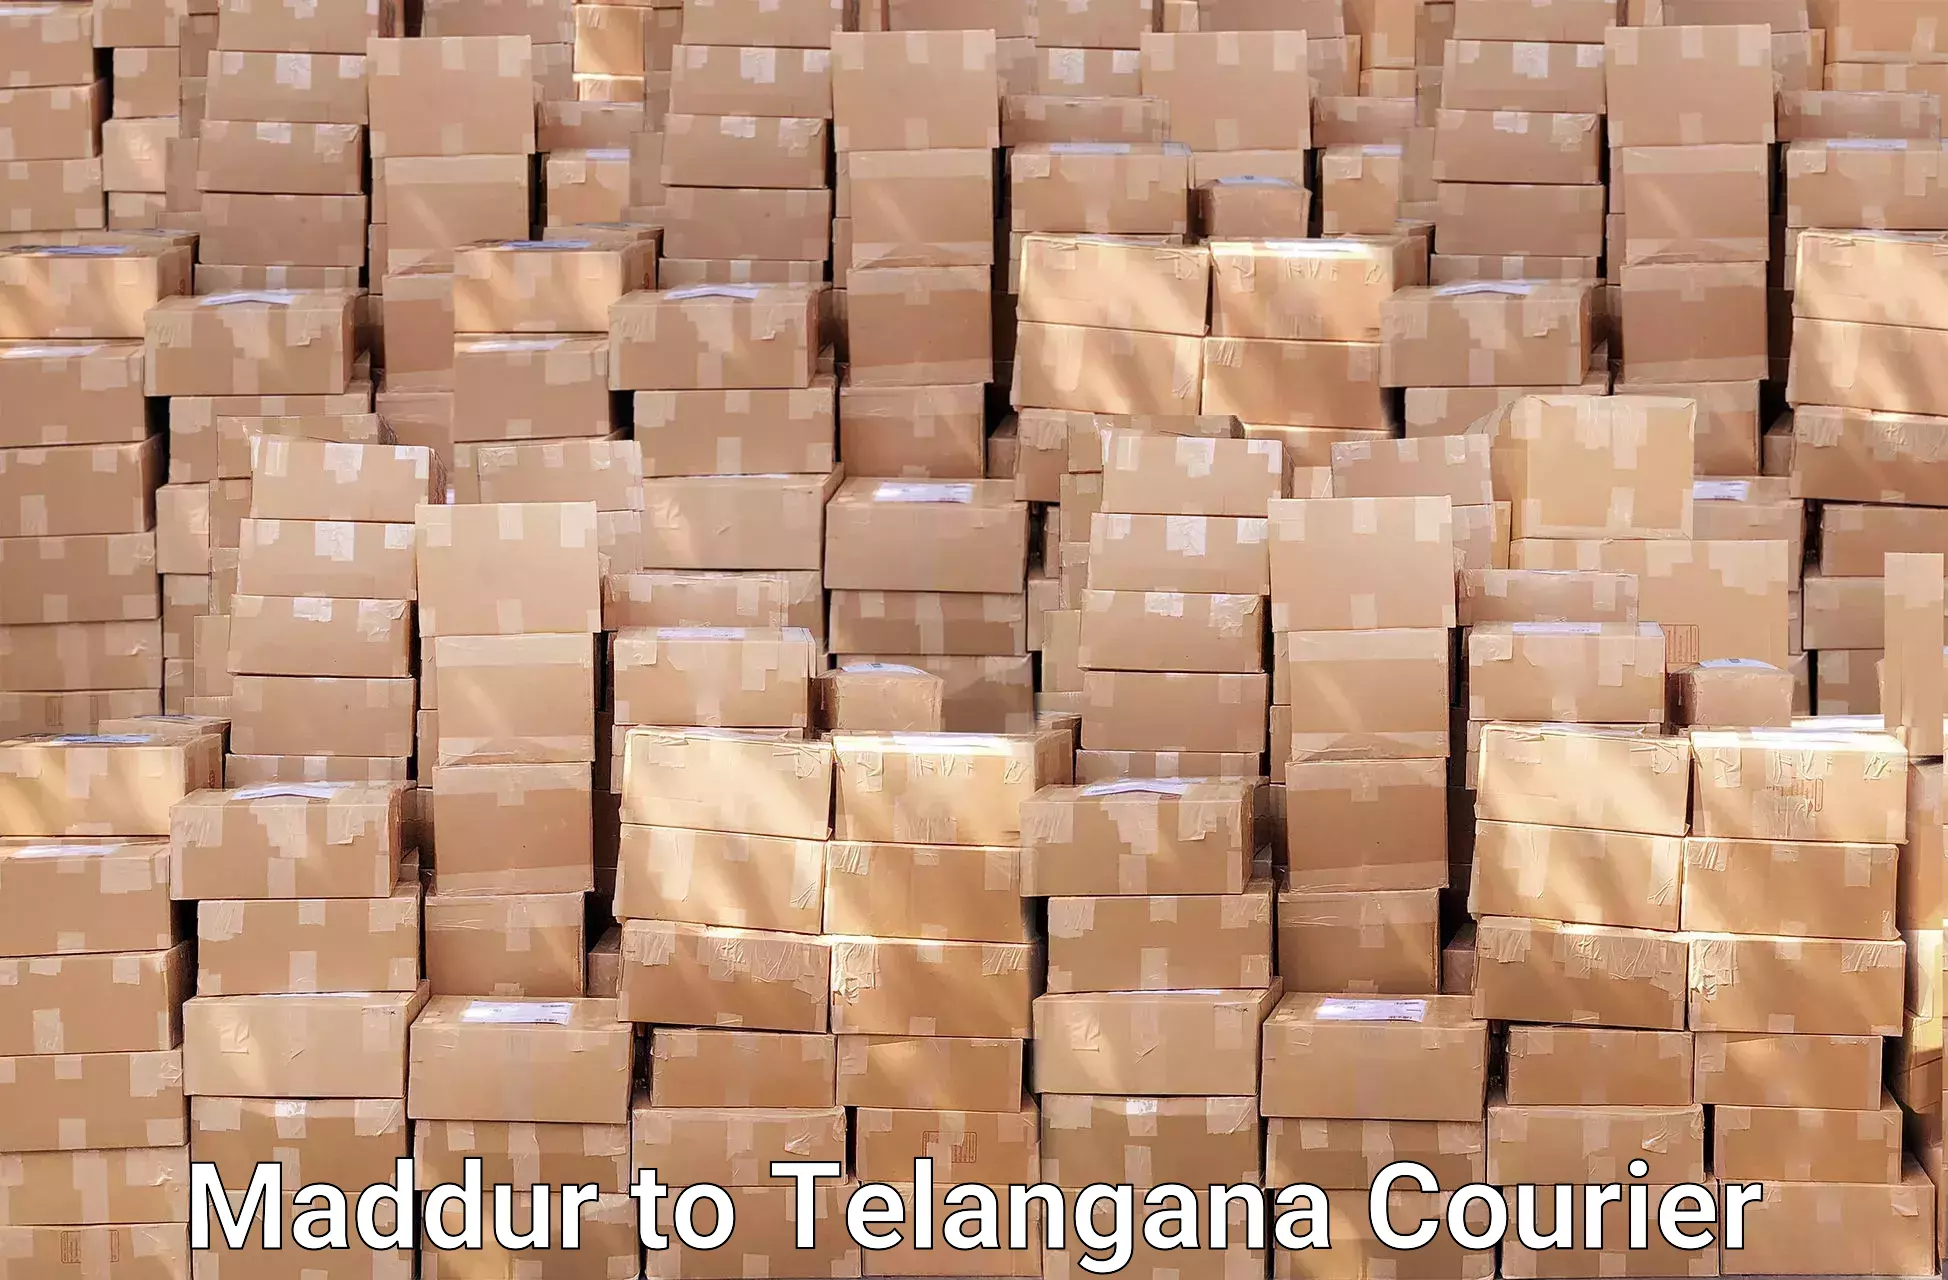 Door-to-door relocation services in Maddur to Telangana